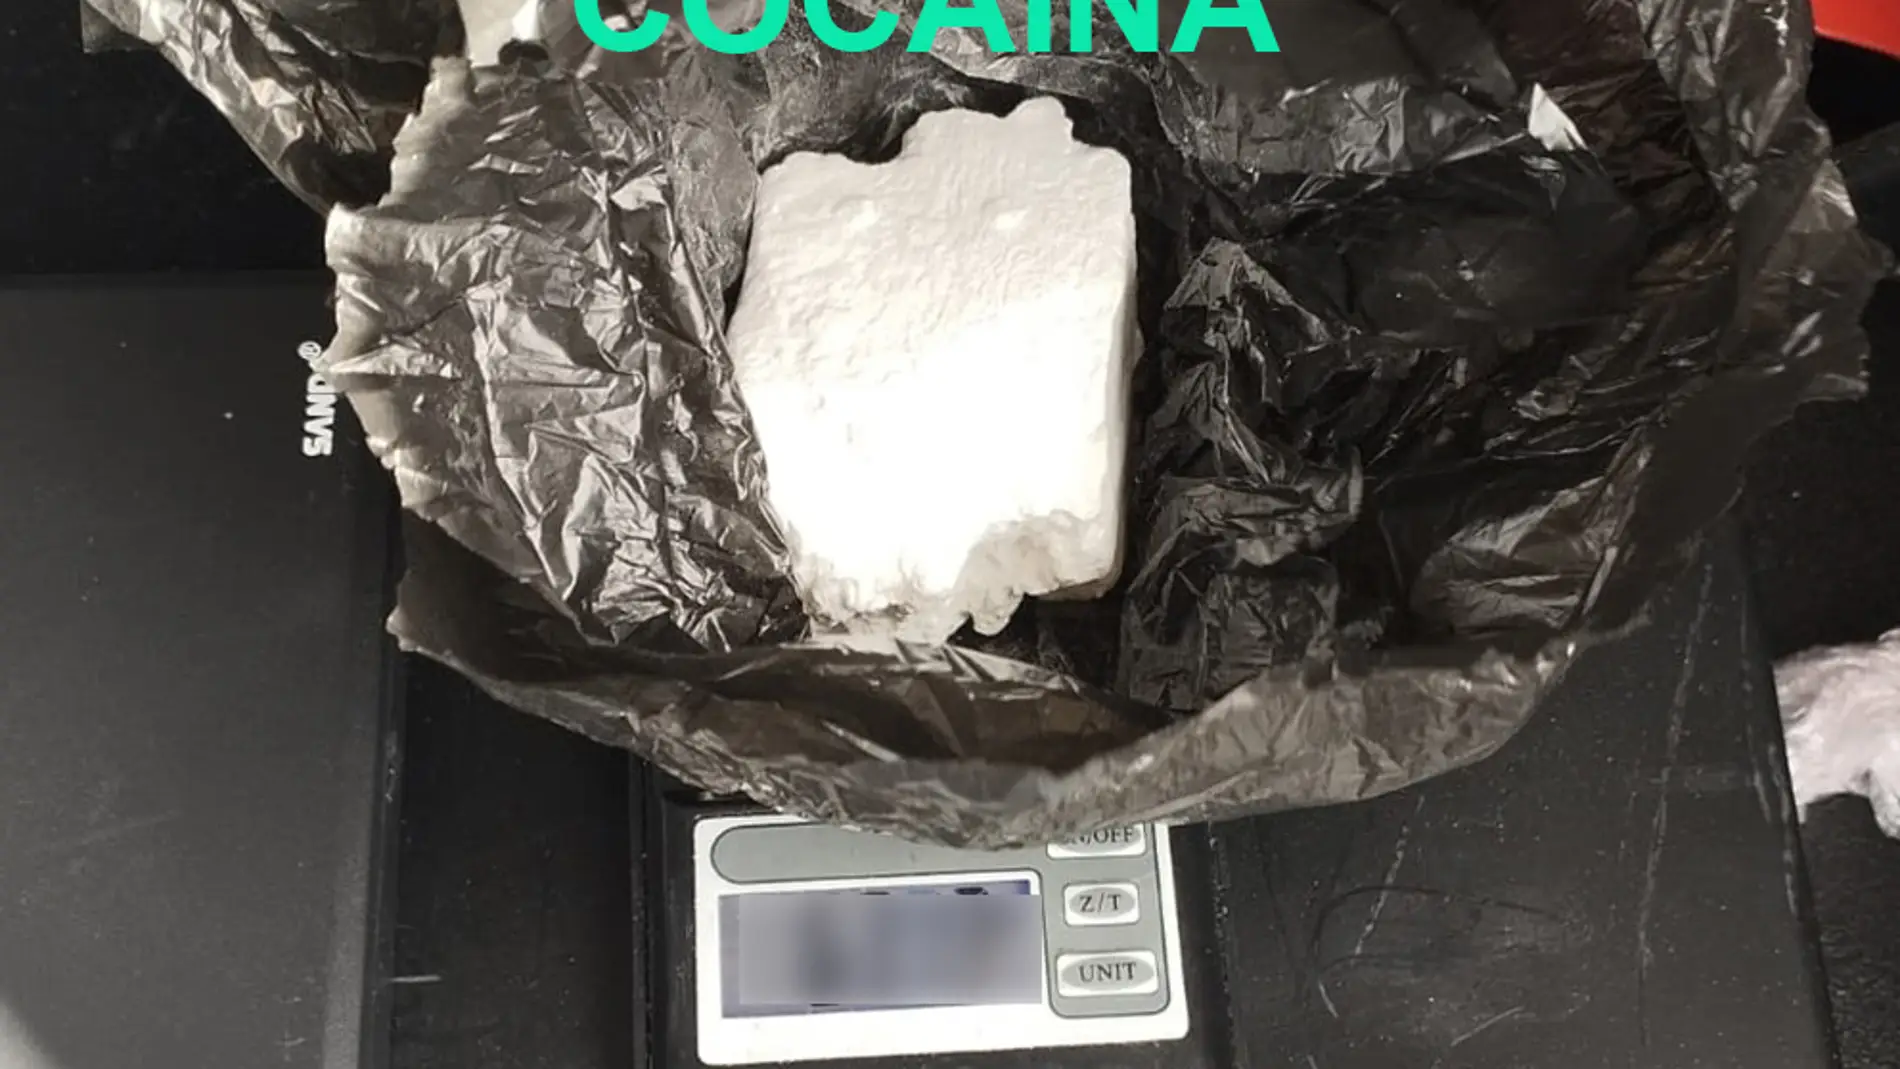 Detenida una persona por un delito contra la salud pública: intervenidas 660 dosis de cocaína